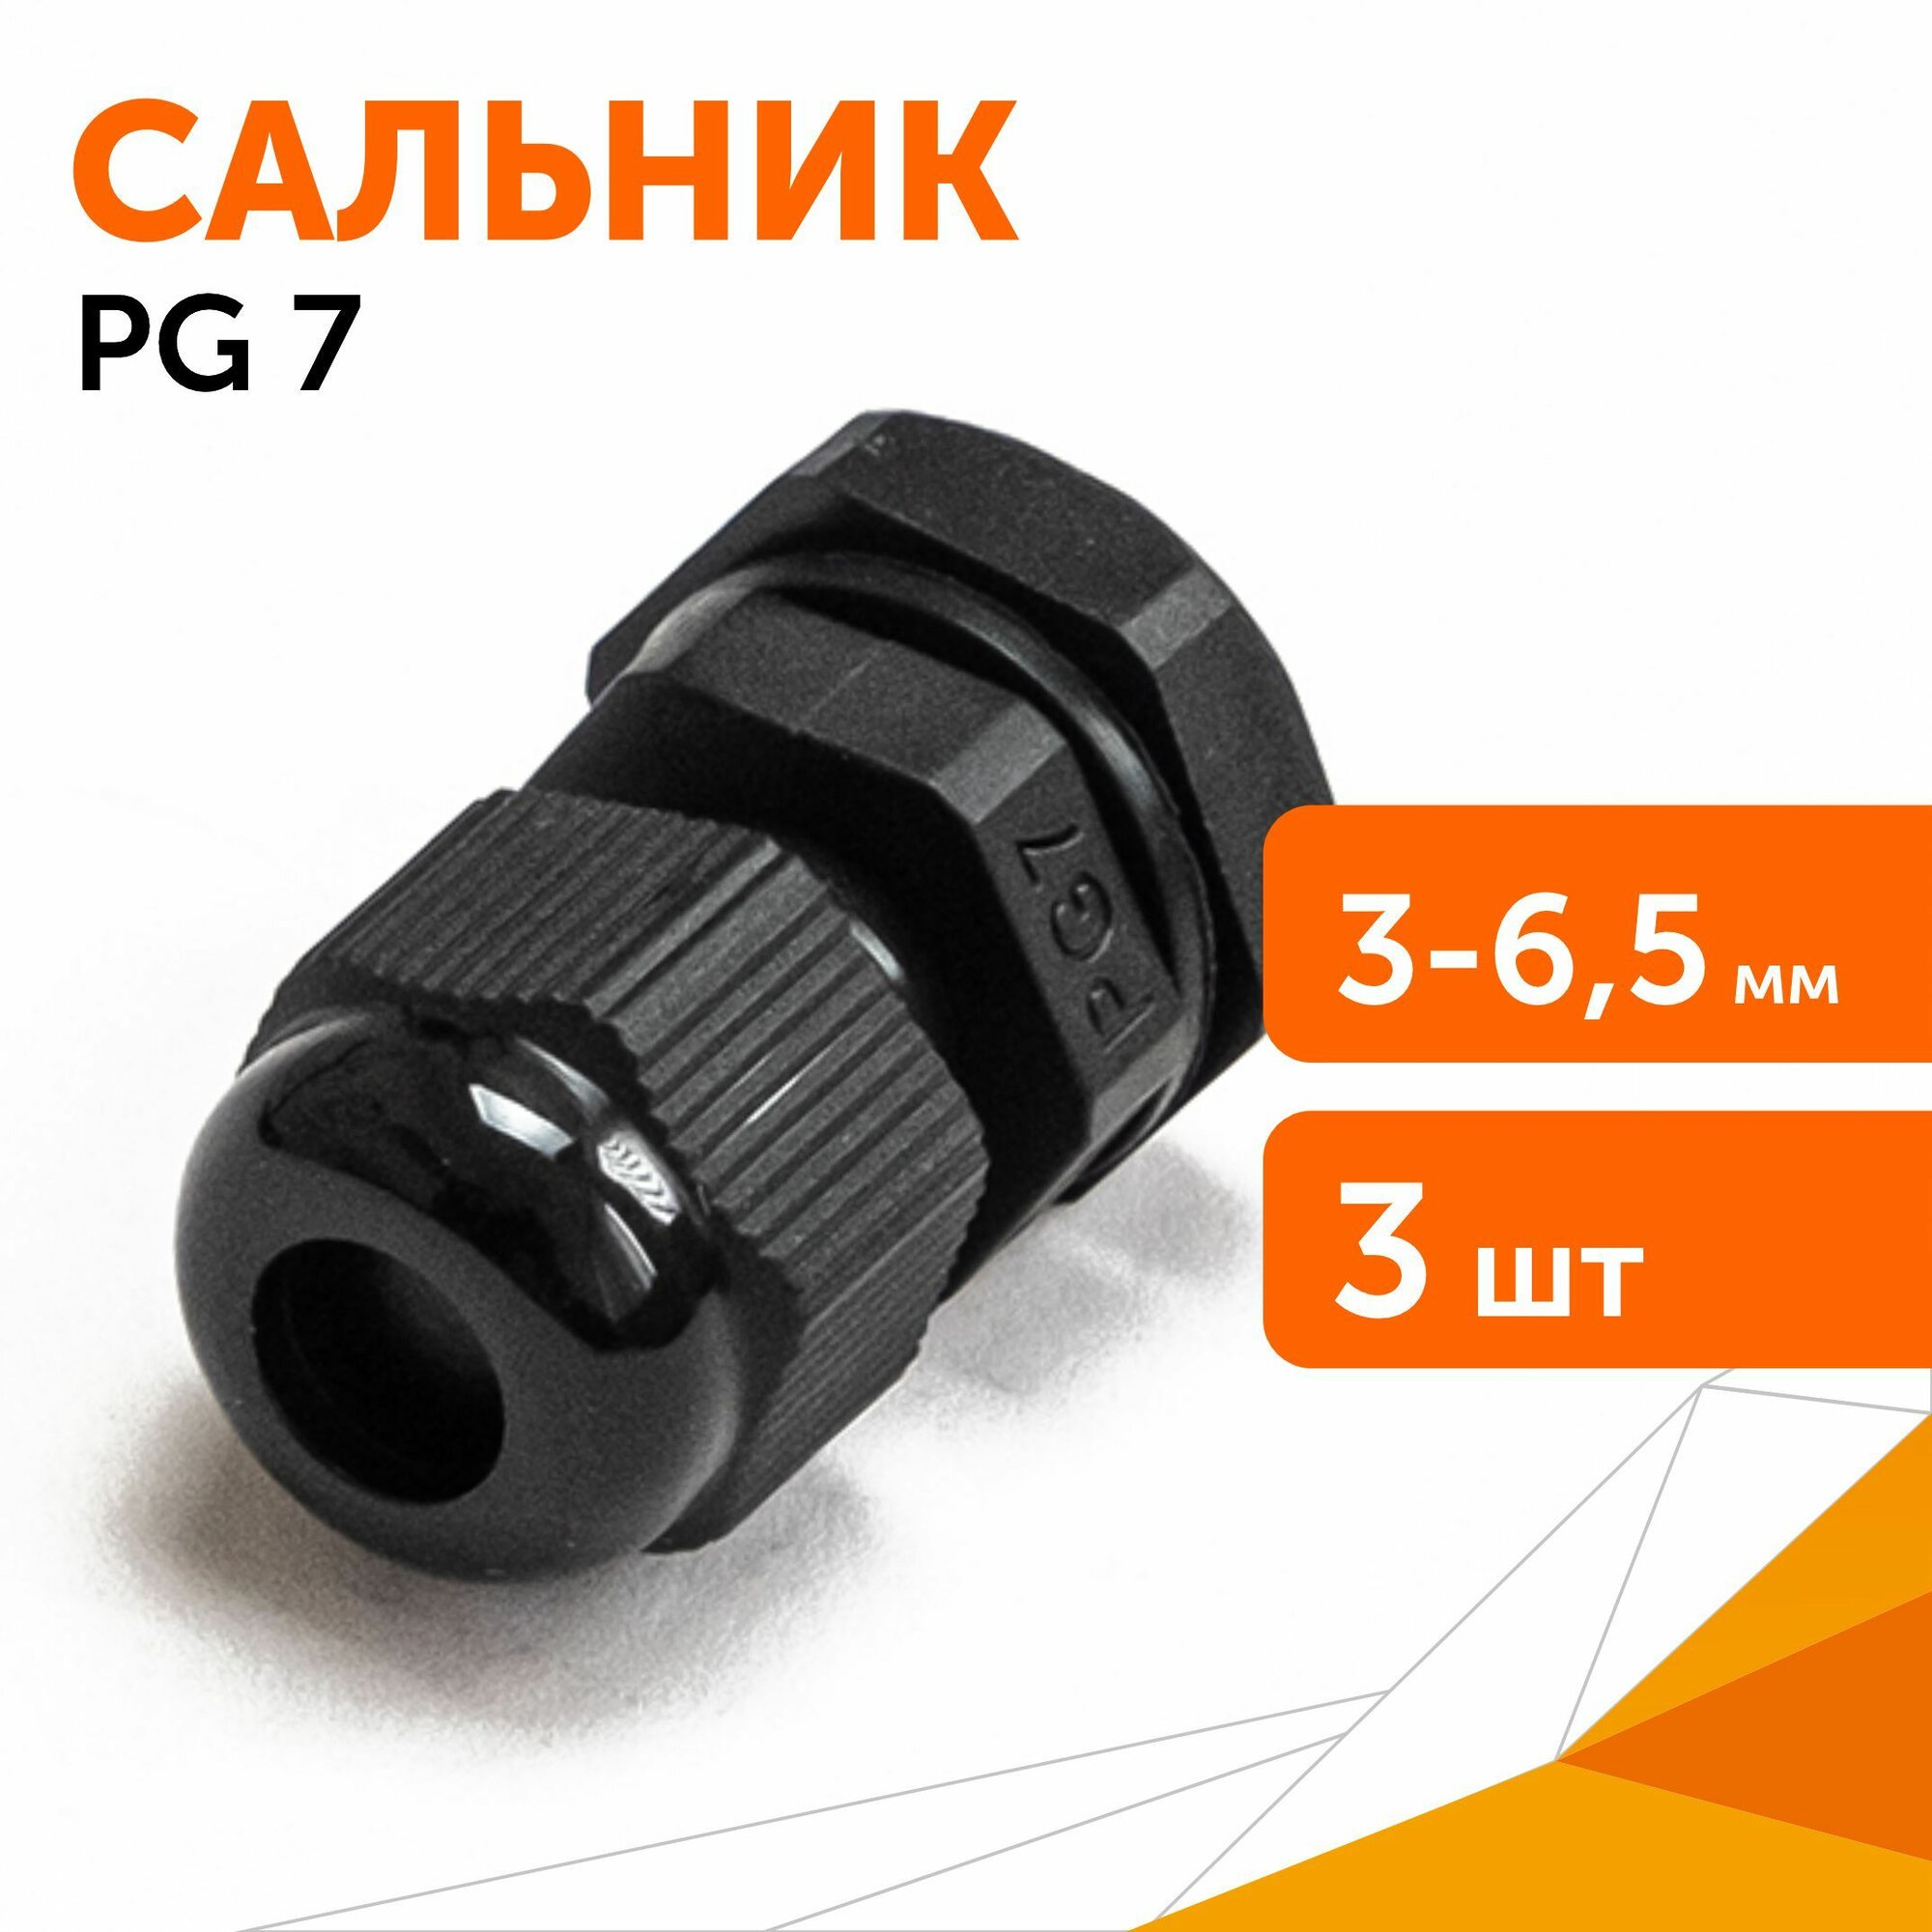 Сальник PG 7 (IP68) d отверстия 3-6,5 мм черный, 3 шт/уп